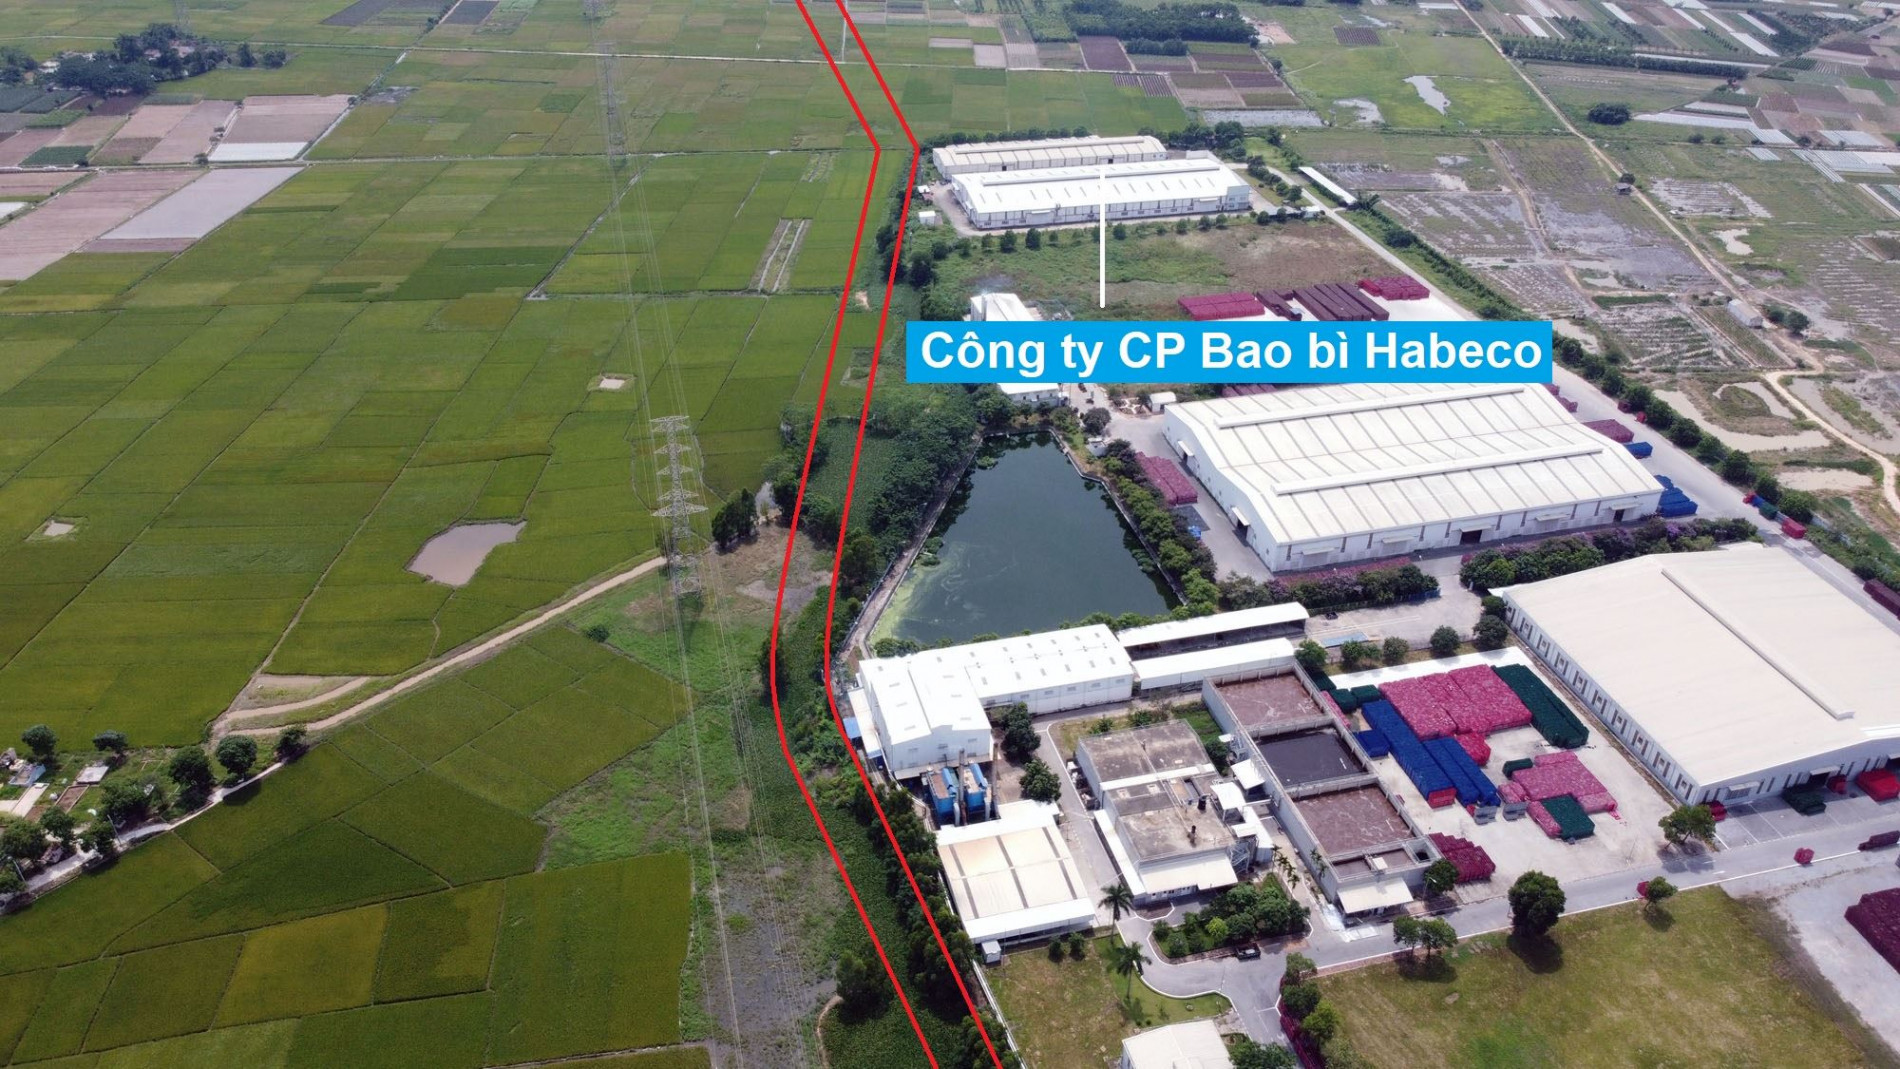 Đường sẽ mở theo quy hoạch ở xã Tiền Phong, Mê Linh, Hà Nội (phần 6)